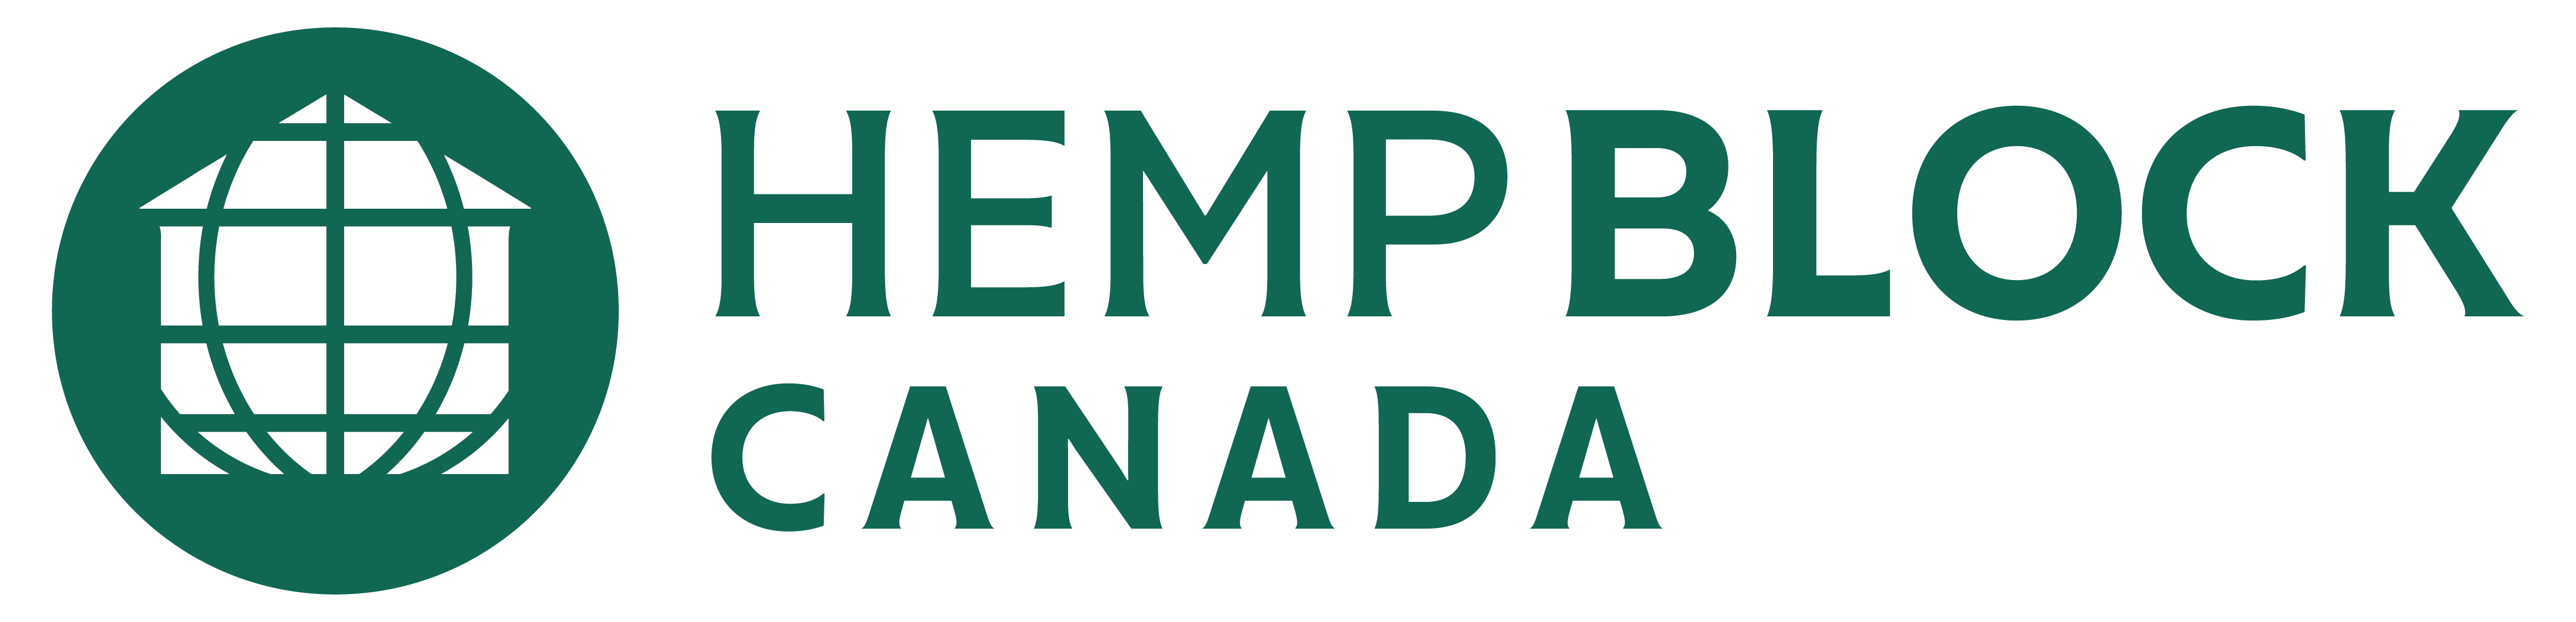 Hemp Block Canada